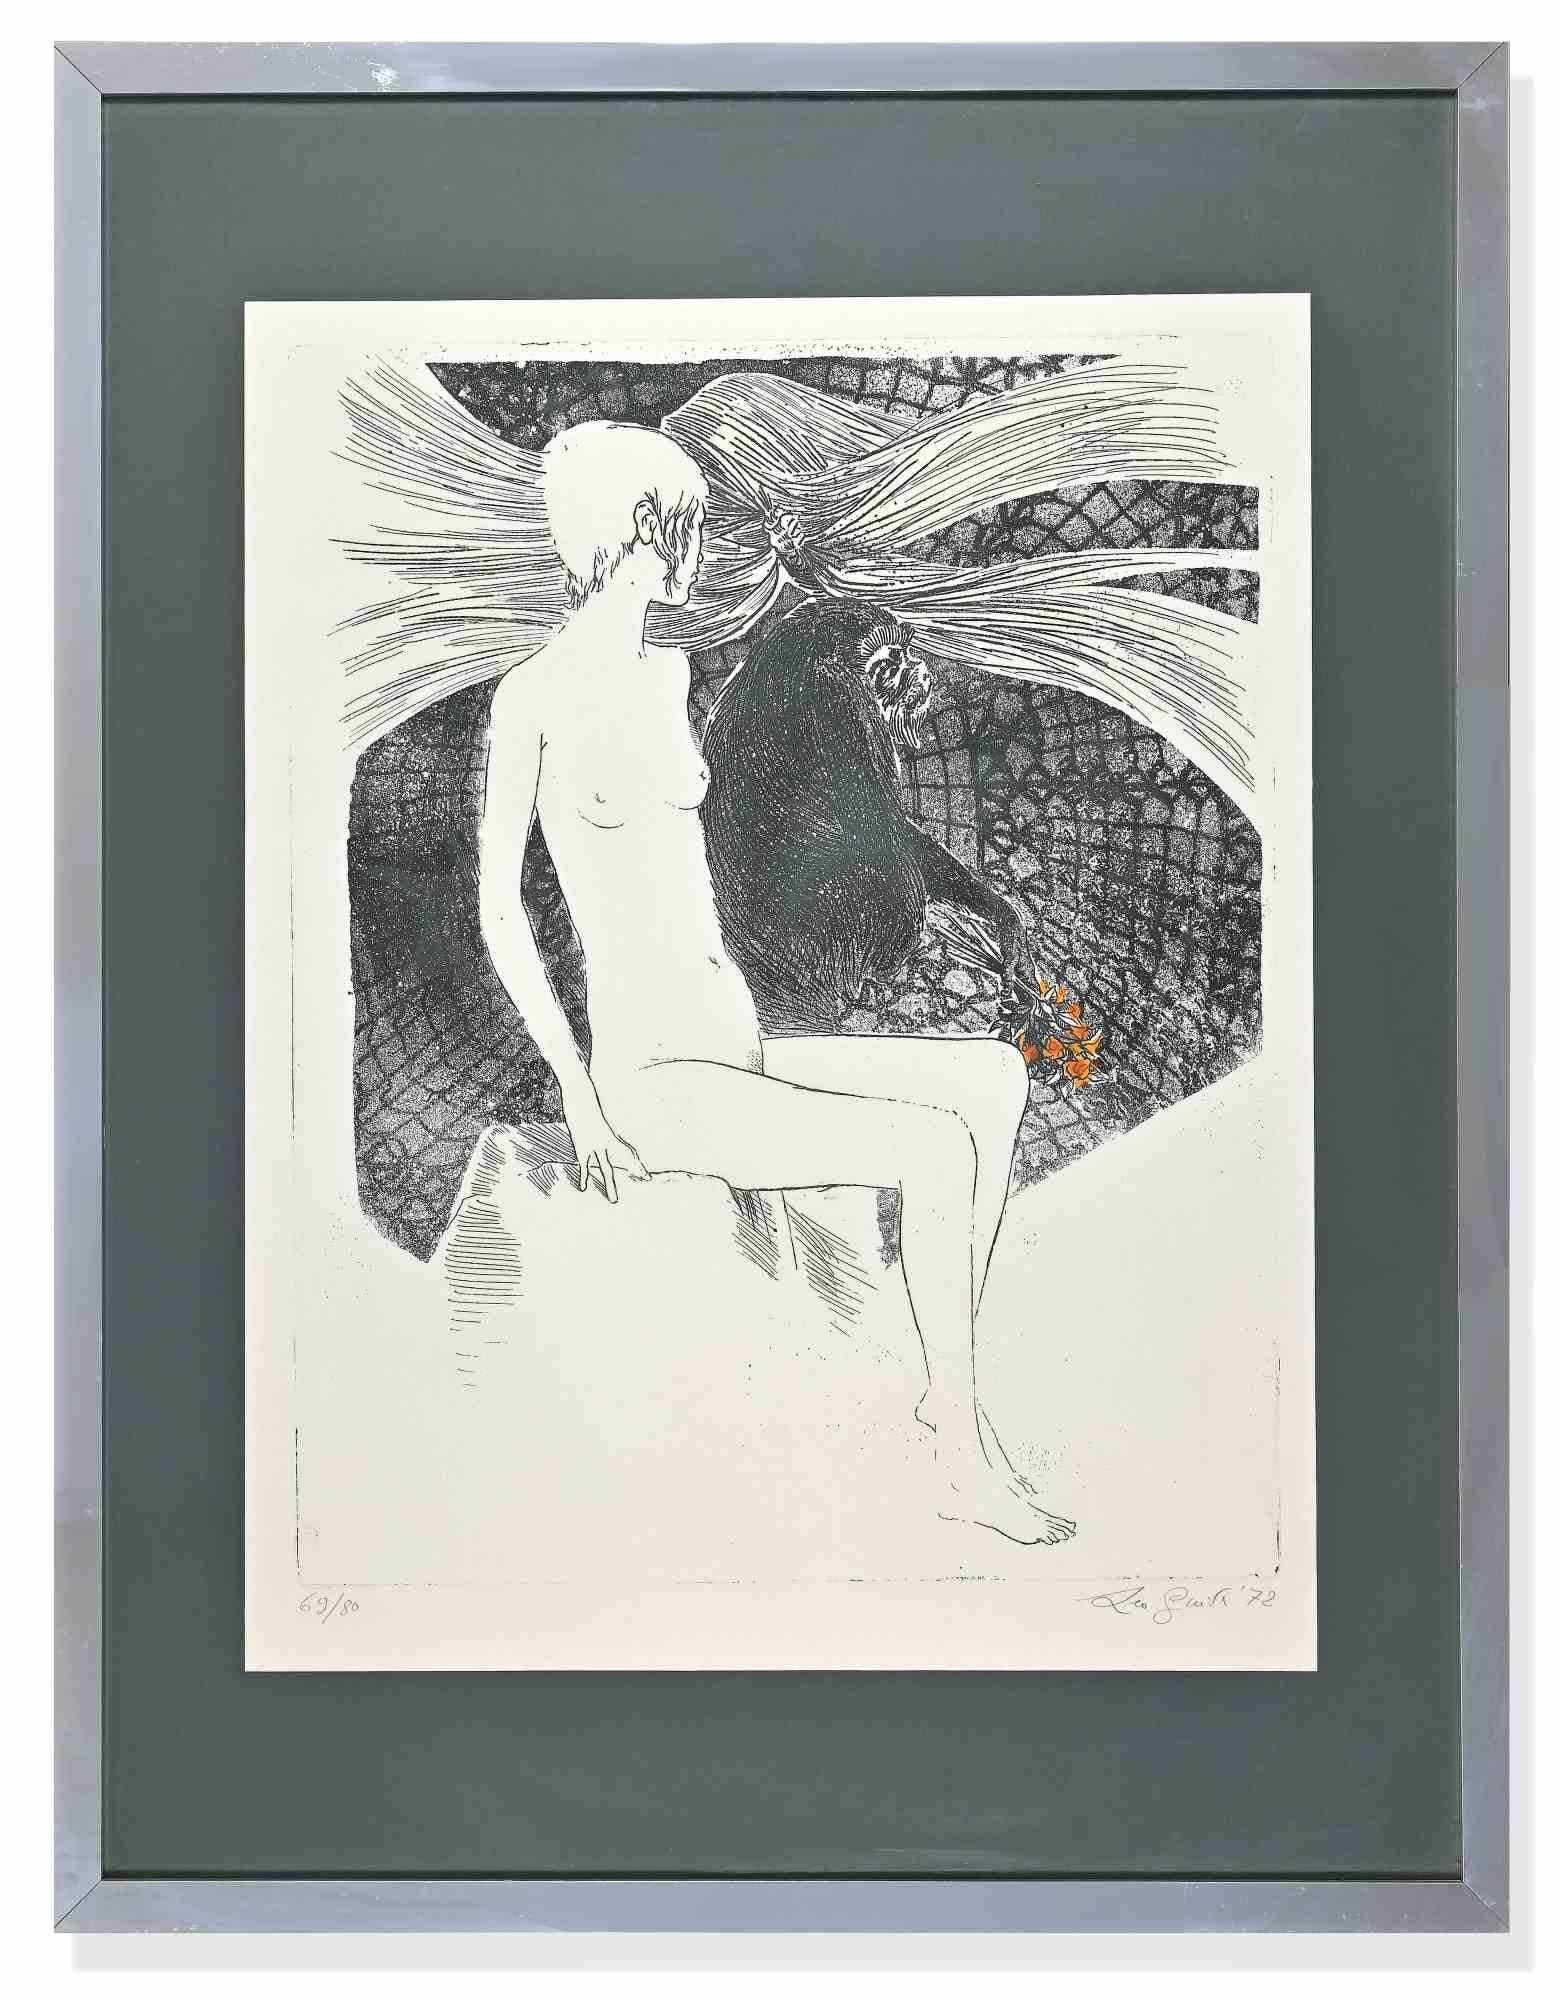 Woman ist ein originales zeitgenössisches Kunstwerk von Leo Guida aus dem Jahr 1972.

Schwarz-Weiß-Radierung.

Vom Künstler am unteren rechten Rand handsigniert und datiert.

Links unten nummeriert. Ausgabe 69/80.

Inklusive Rahmen: 75.5 x 2 x 58